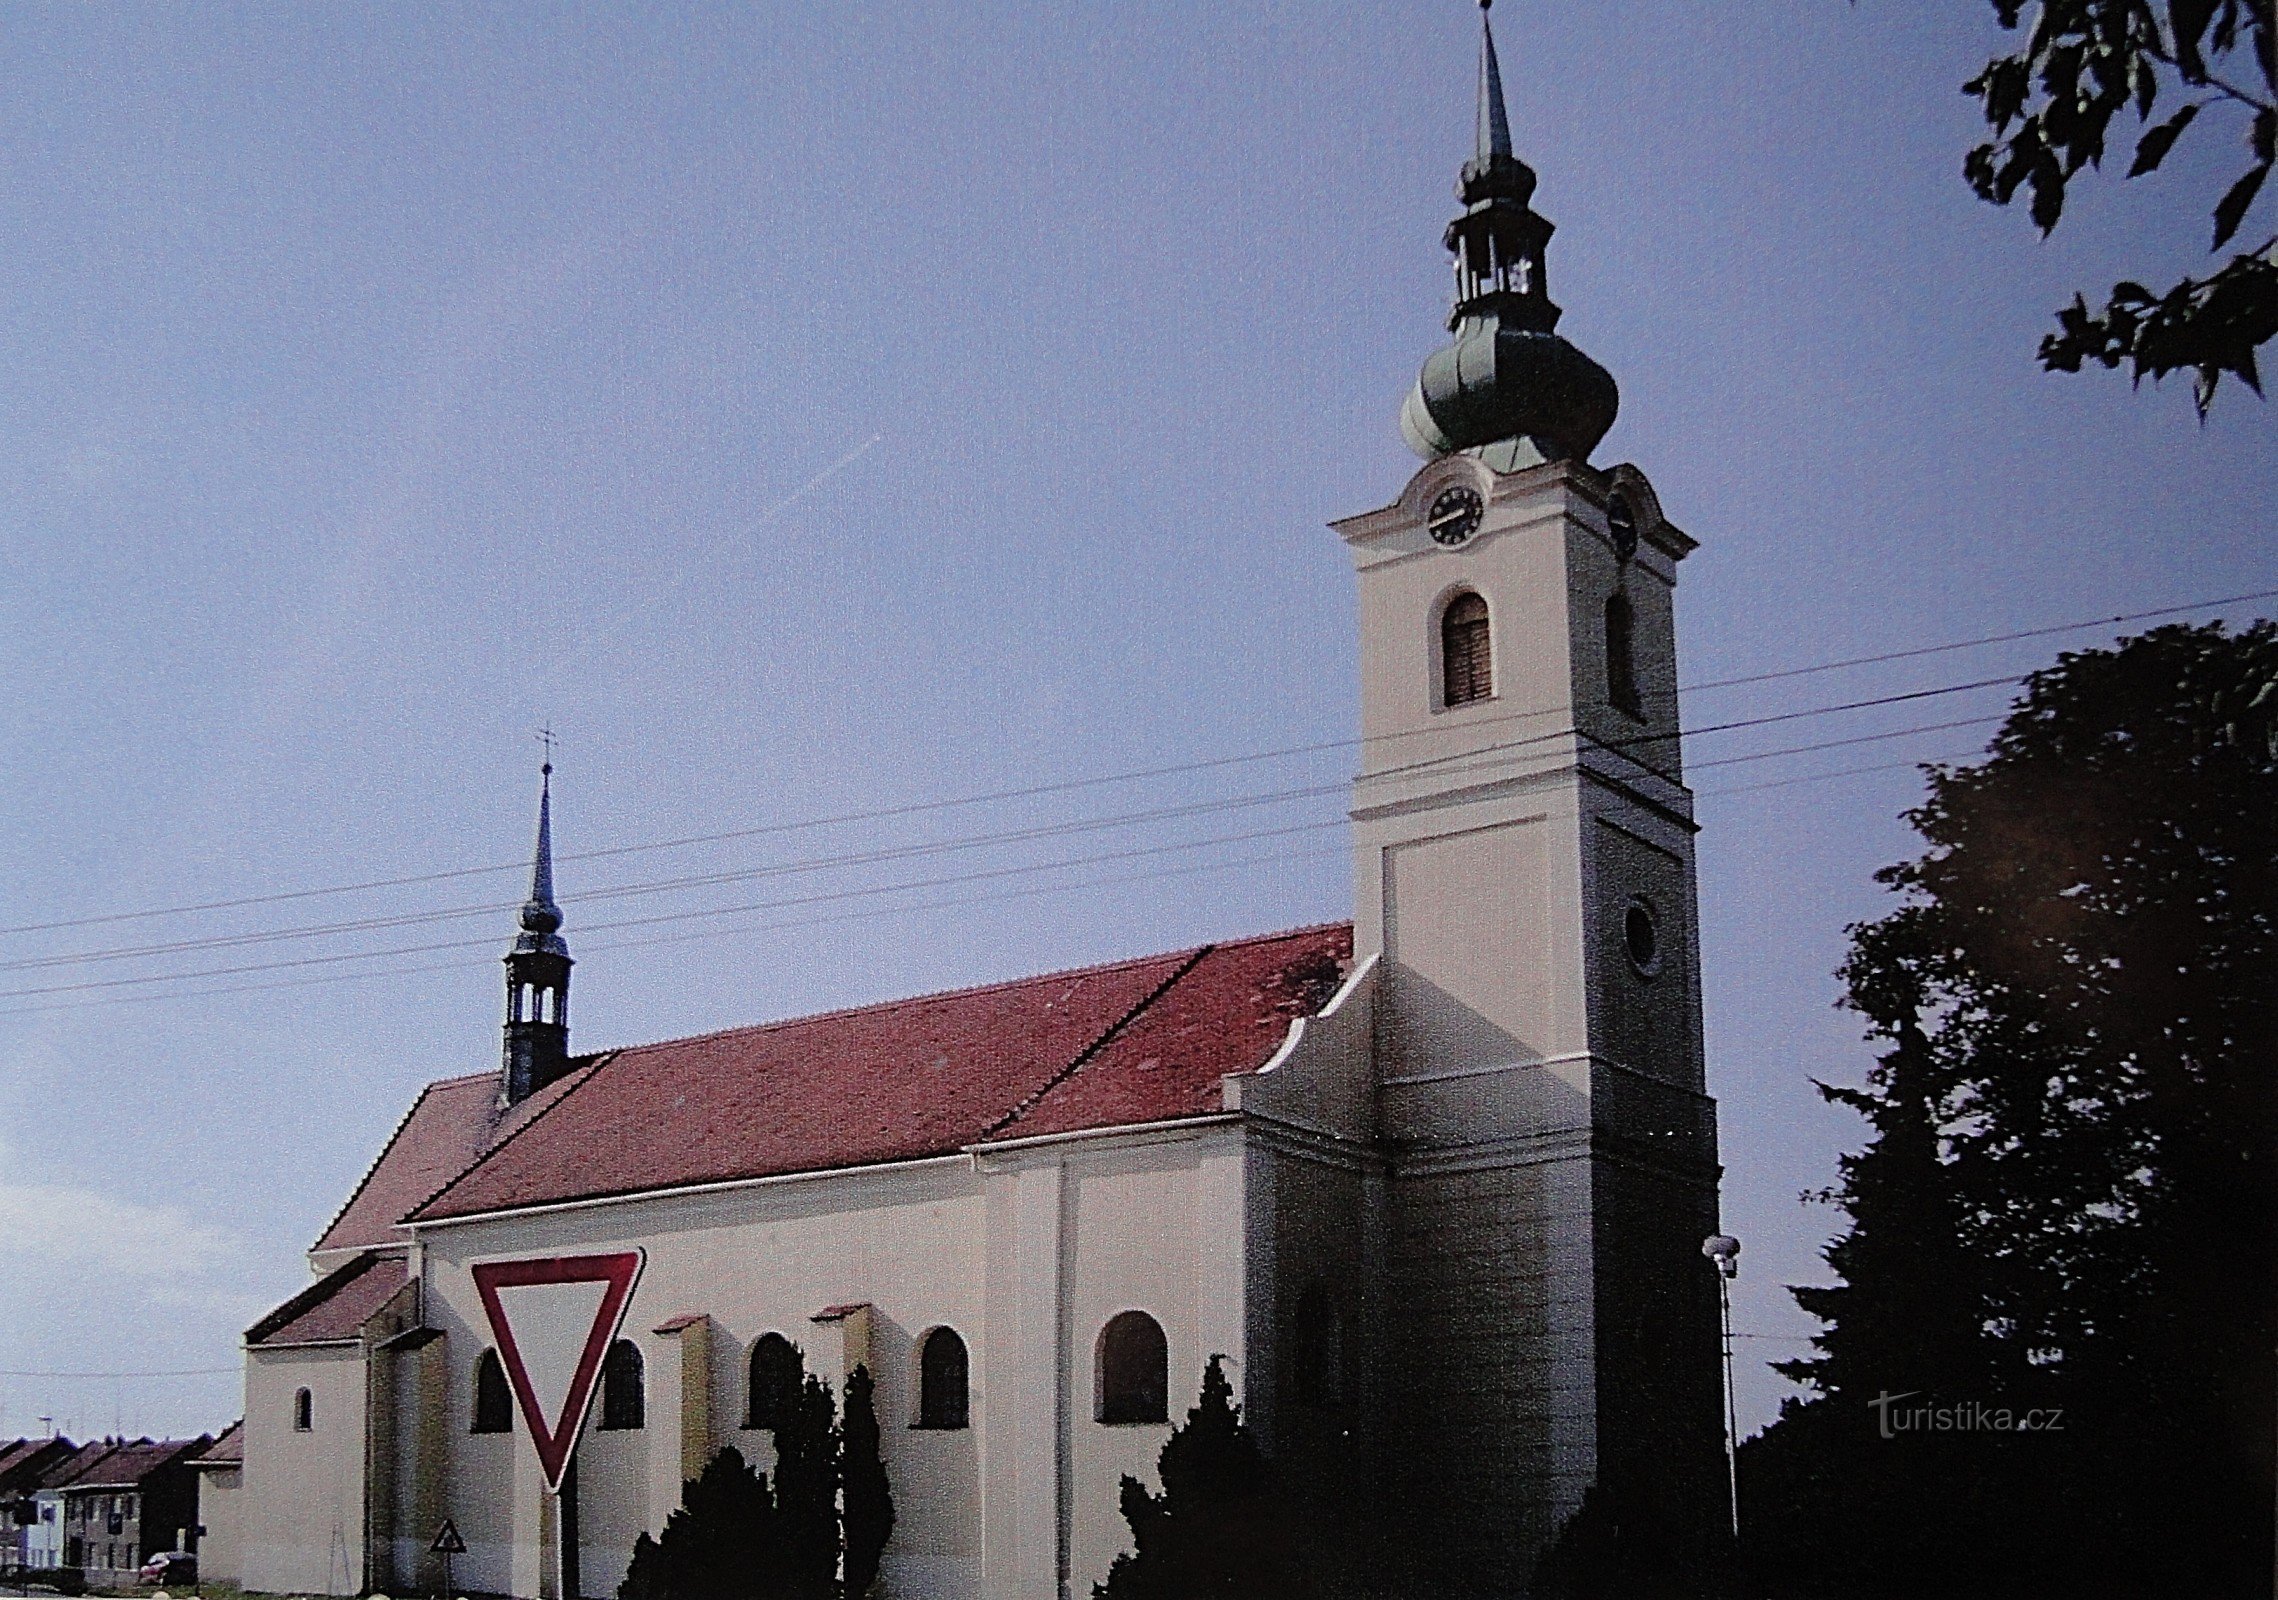 聖クレノヴィツェ教会バーソロミュー